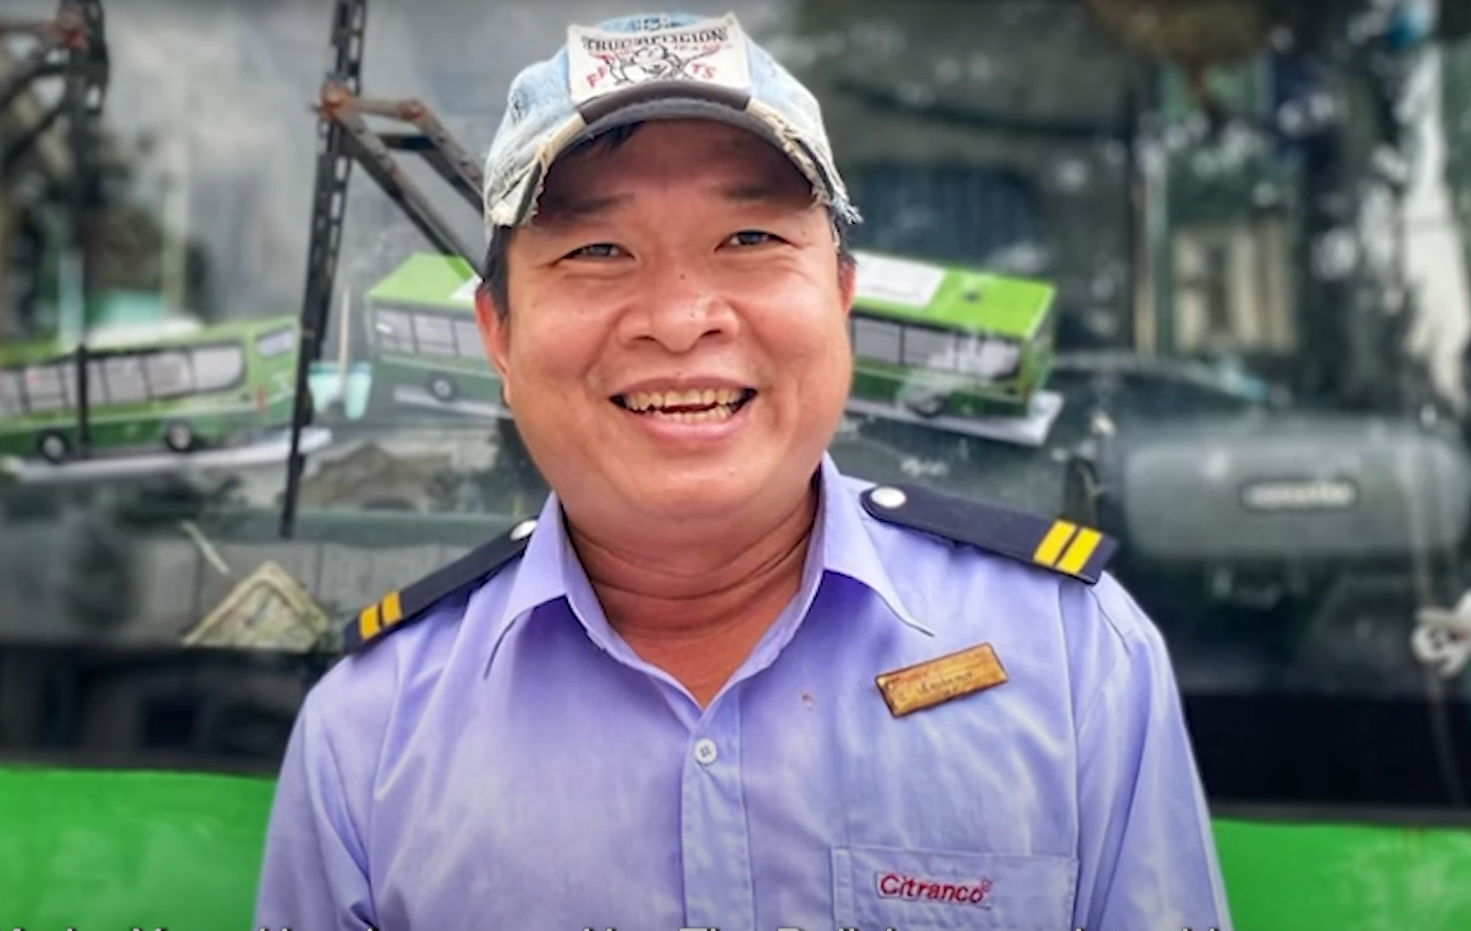 Đang làm ngân hàng thì chuyển qua lái xe buýt, tài xế 6 năm hóa "người hùng", nổi khắp Sài Gòn - Ảnh 1.